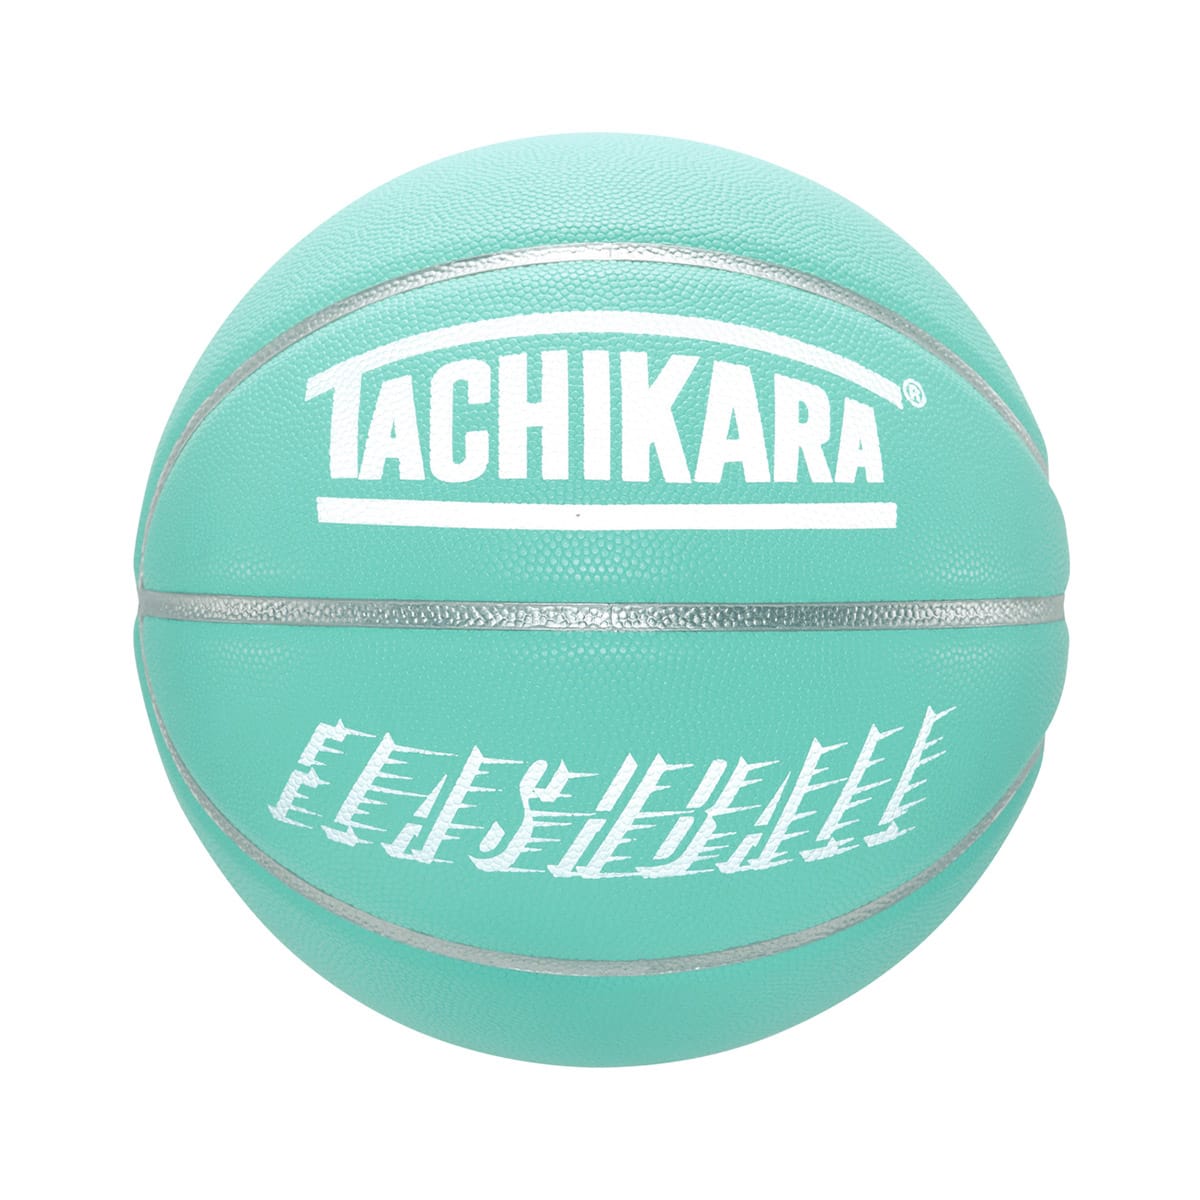 TACHIKARA FLASHBALL -REFLECTIVE- GREEN/WHITE 22HO-I